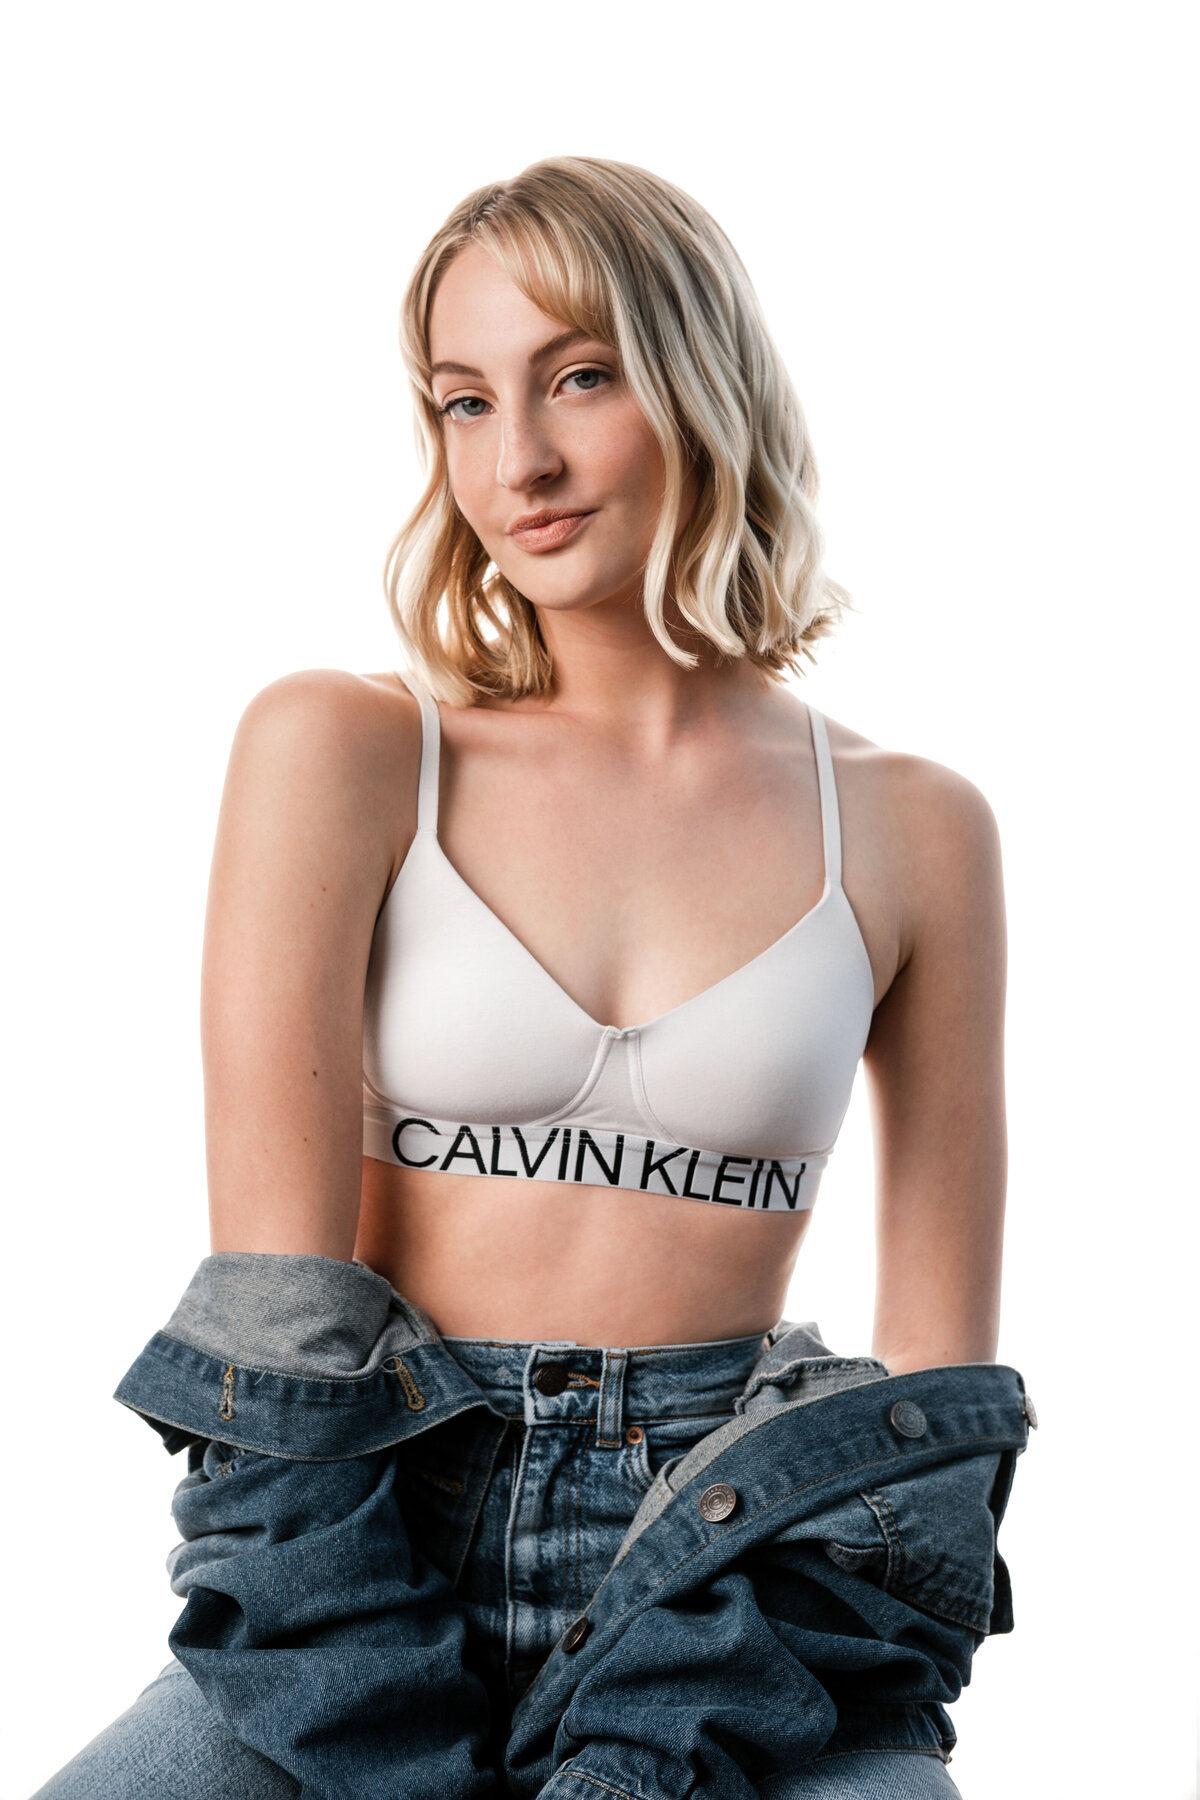 Natural Photoshoot Makeup on Model wearing Calvin Klein